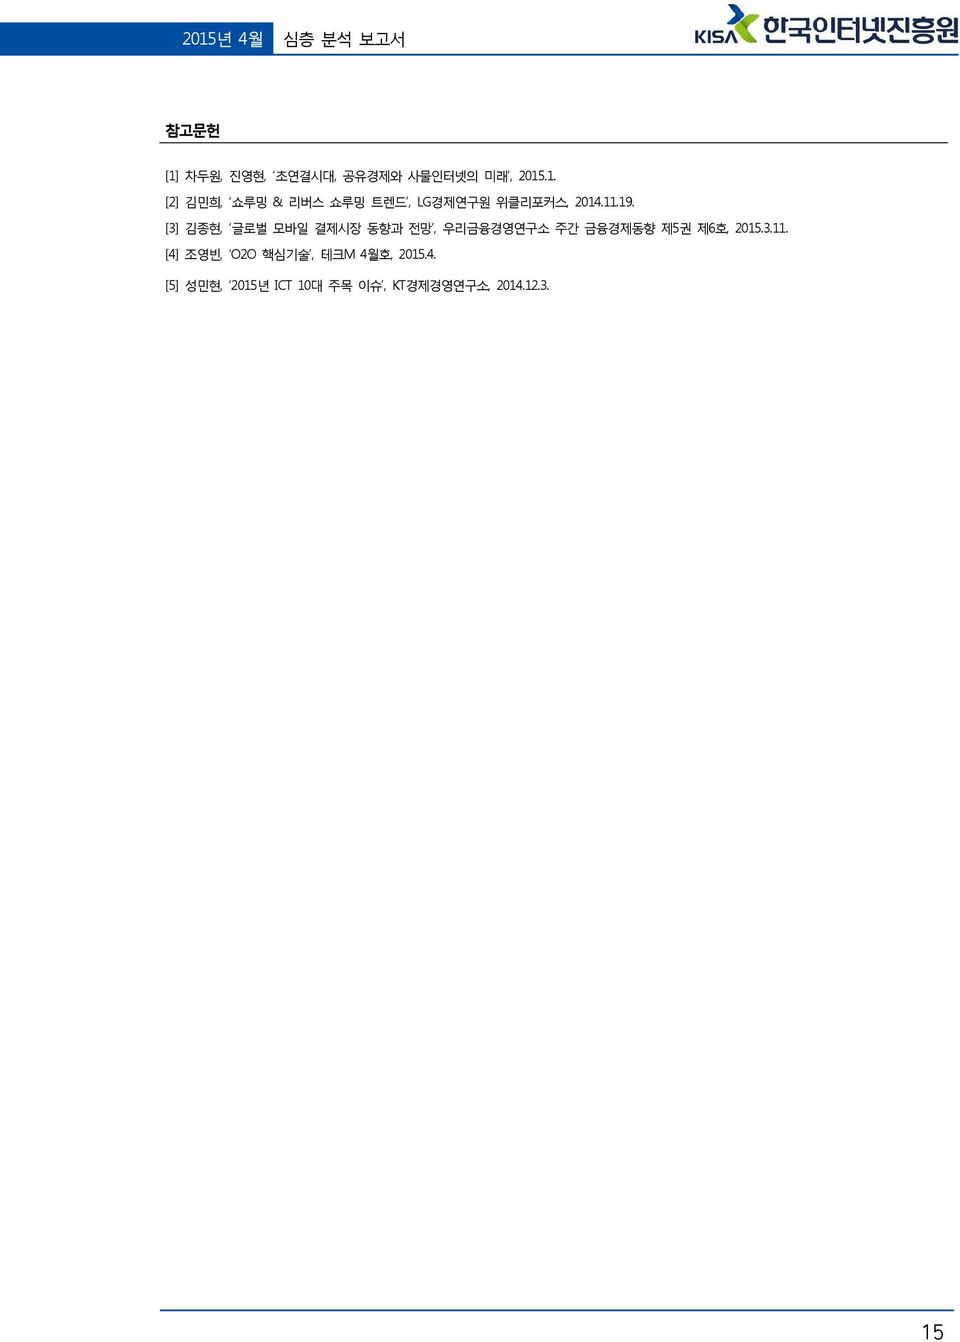 [3] 김종현, 글로벌 모바일 결제시장 동향과 전망, 우리금융경영연구소 주간 금융경제동향 제5권 제6호, 2015.3.11.